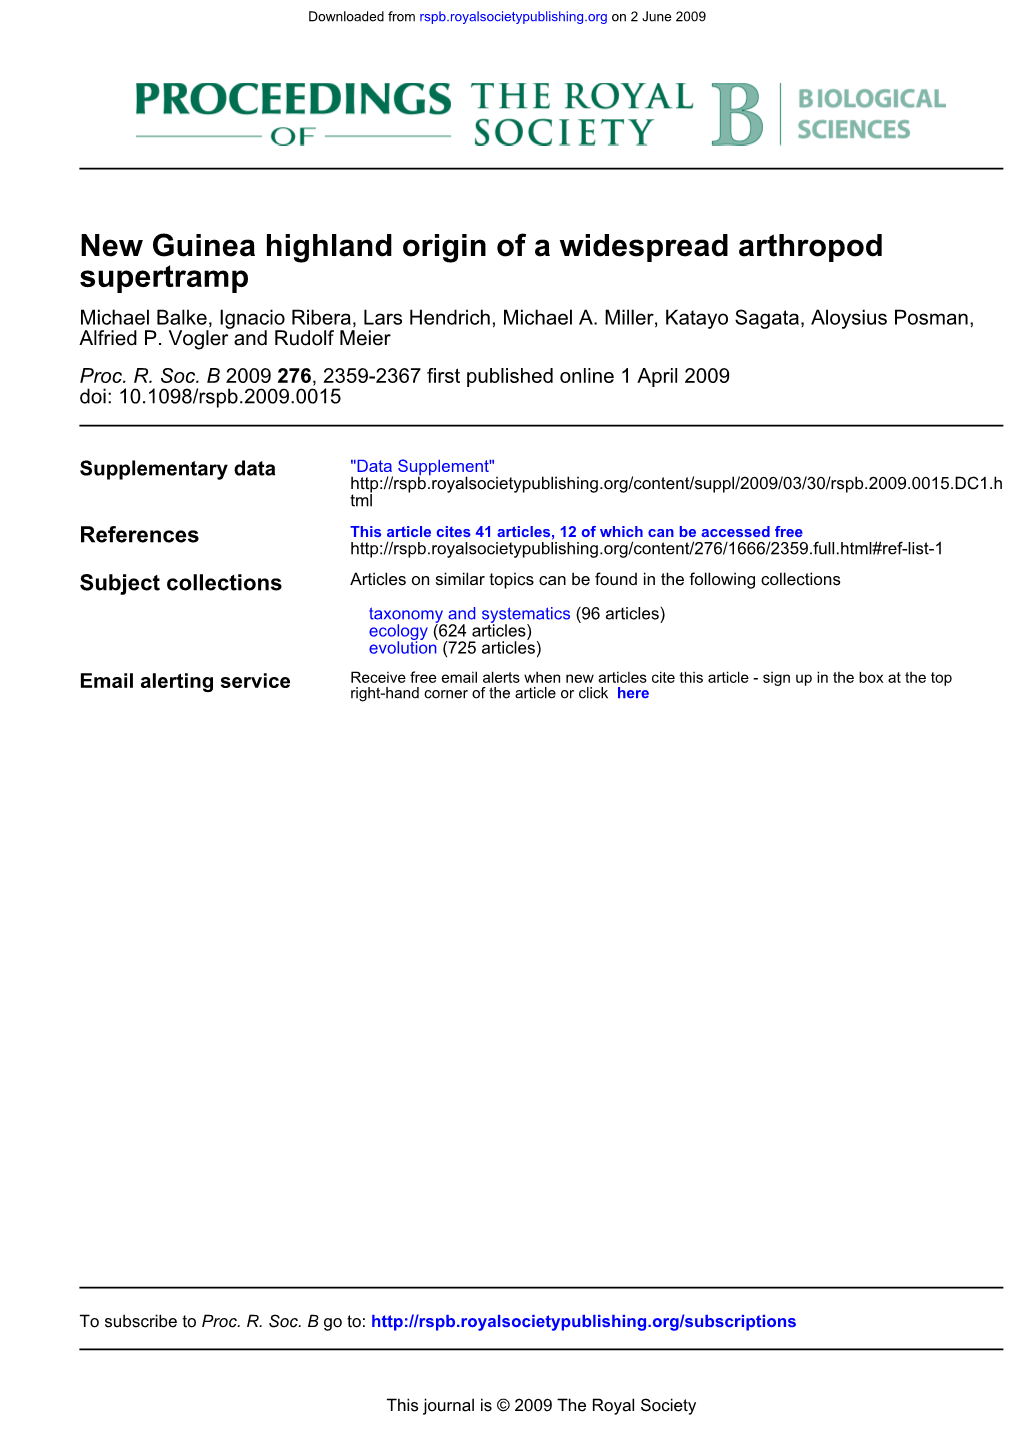 Supertramp New Guinea Highland Origin of a Widespread Arthropod